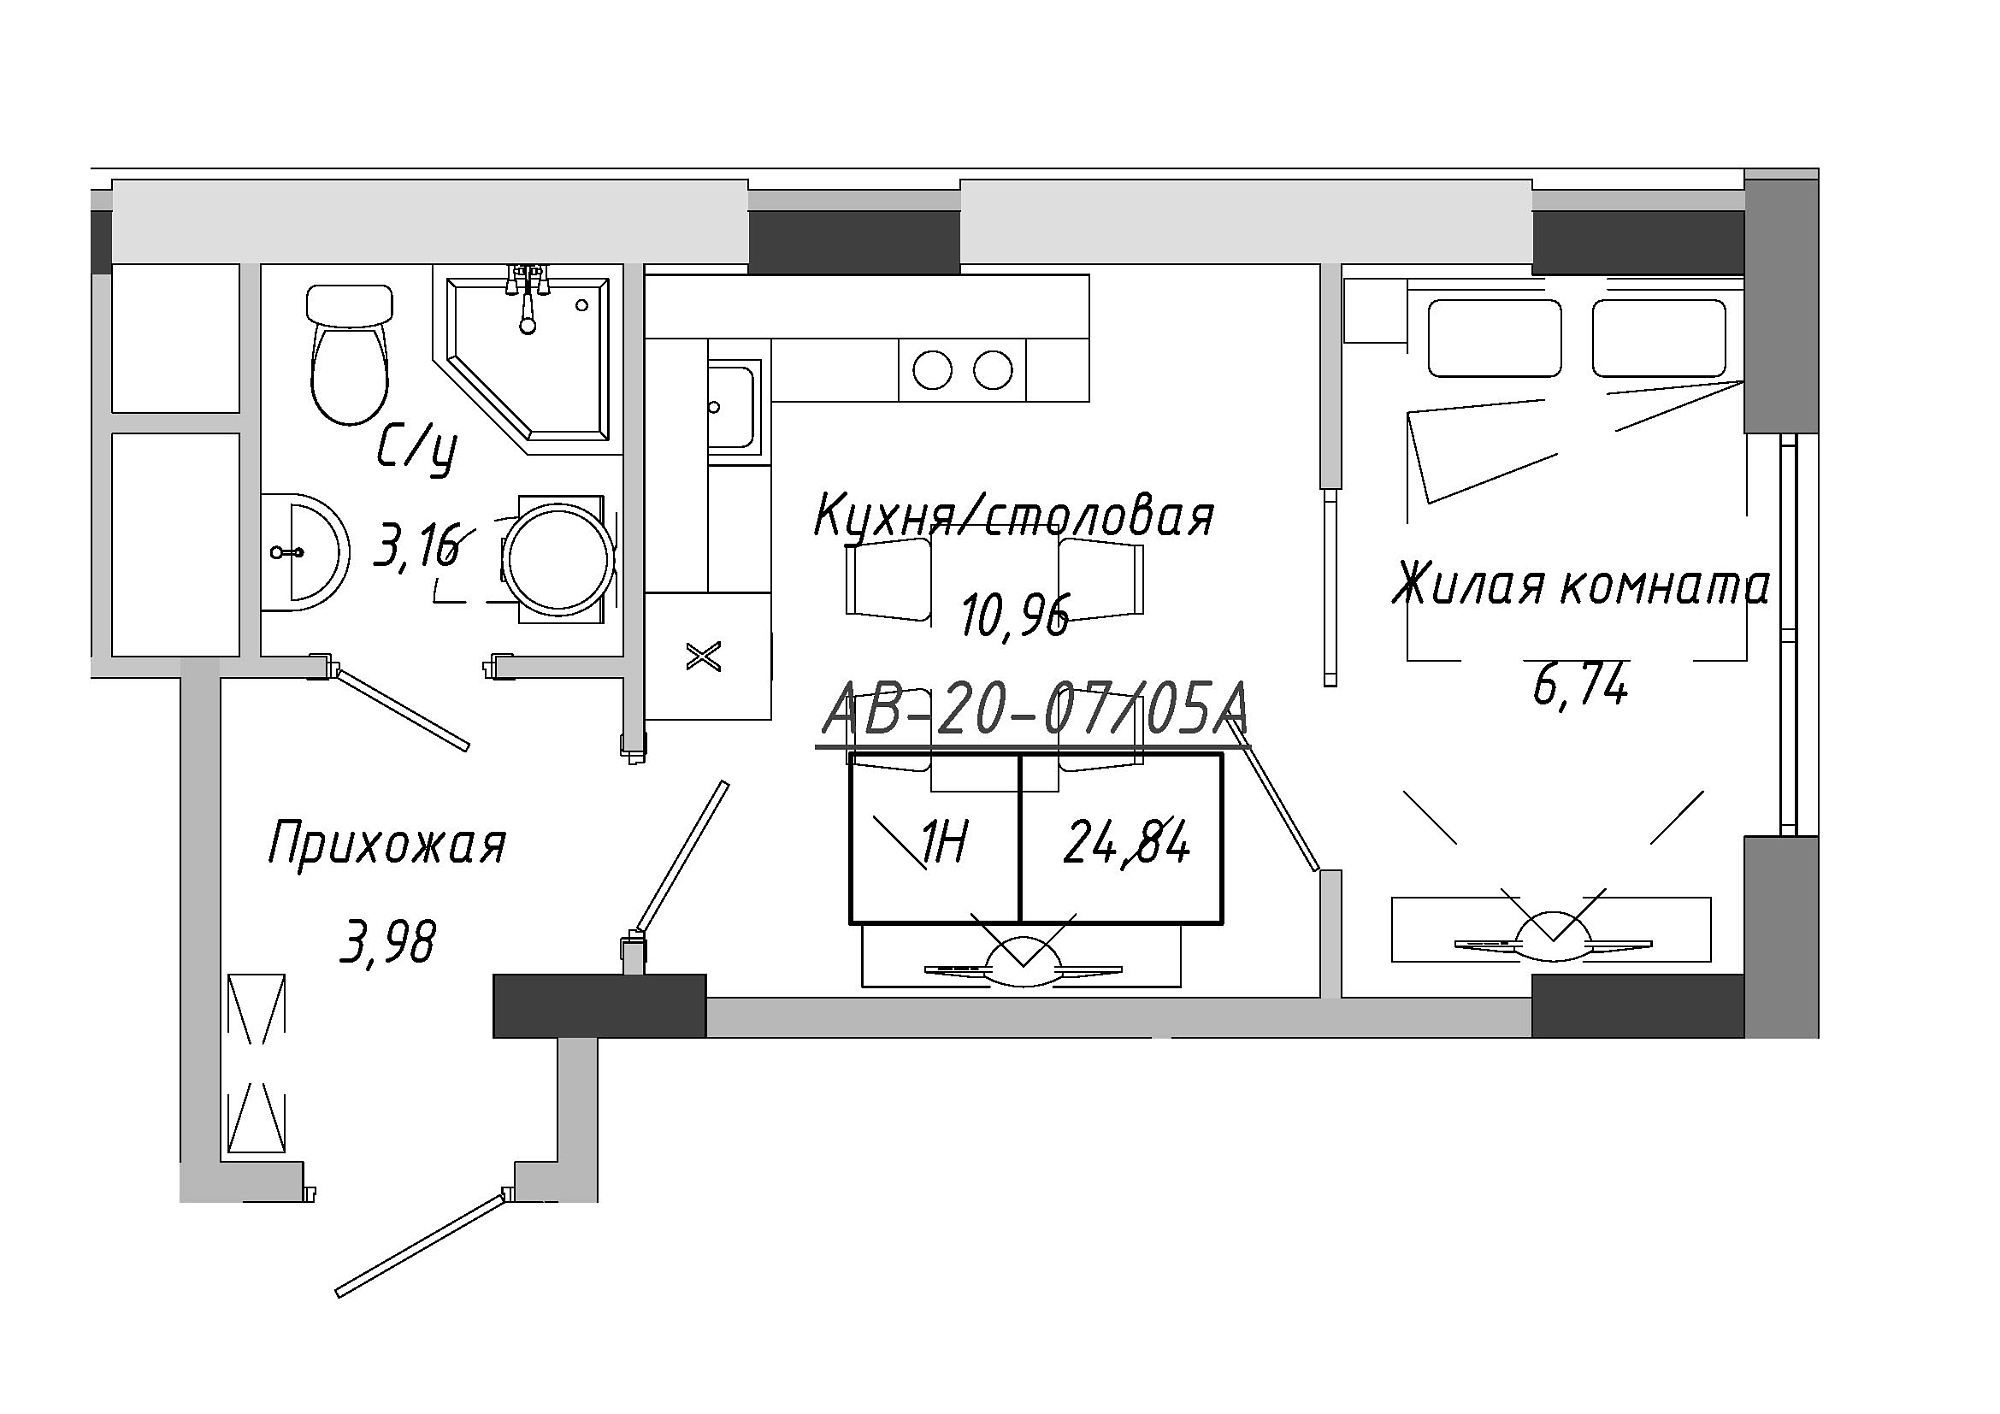 Планування 1-к квартира площею 24.41м2, AB-20-07/0005а.